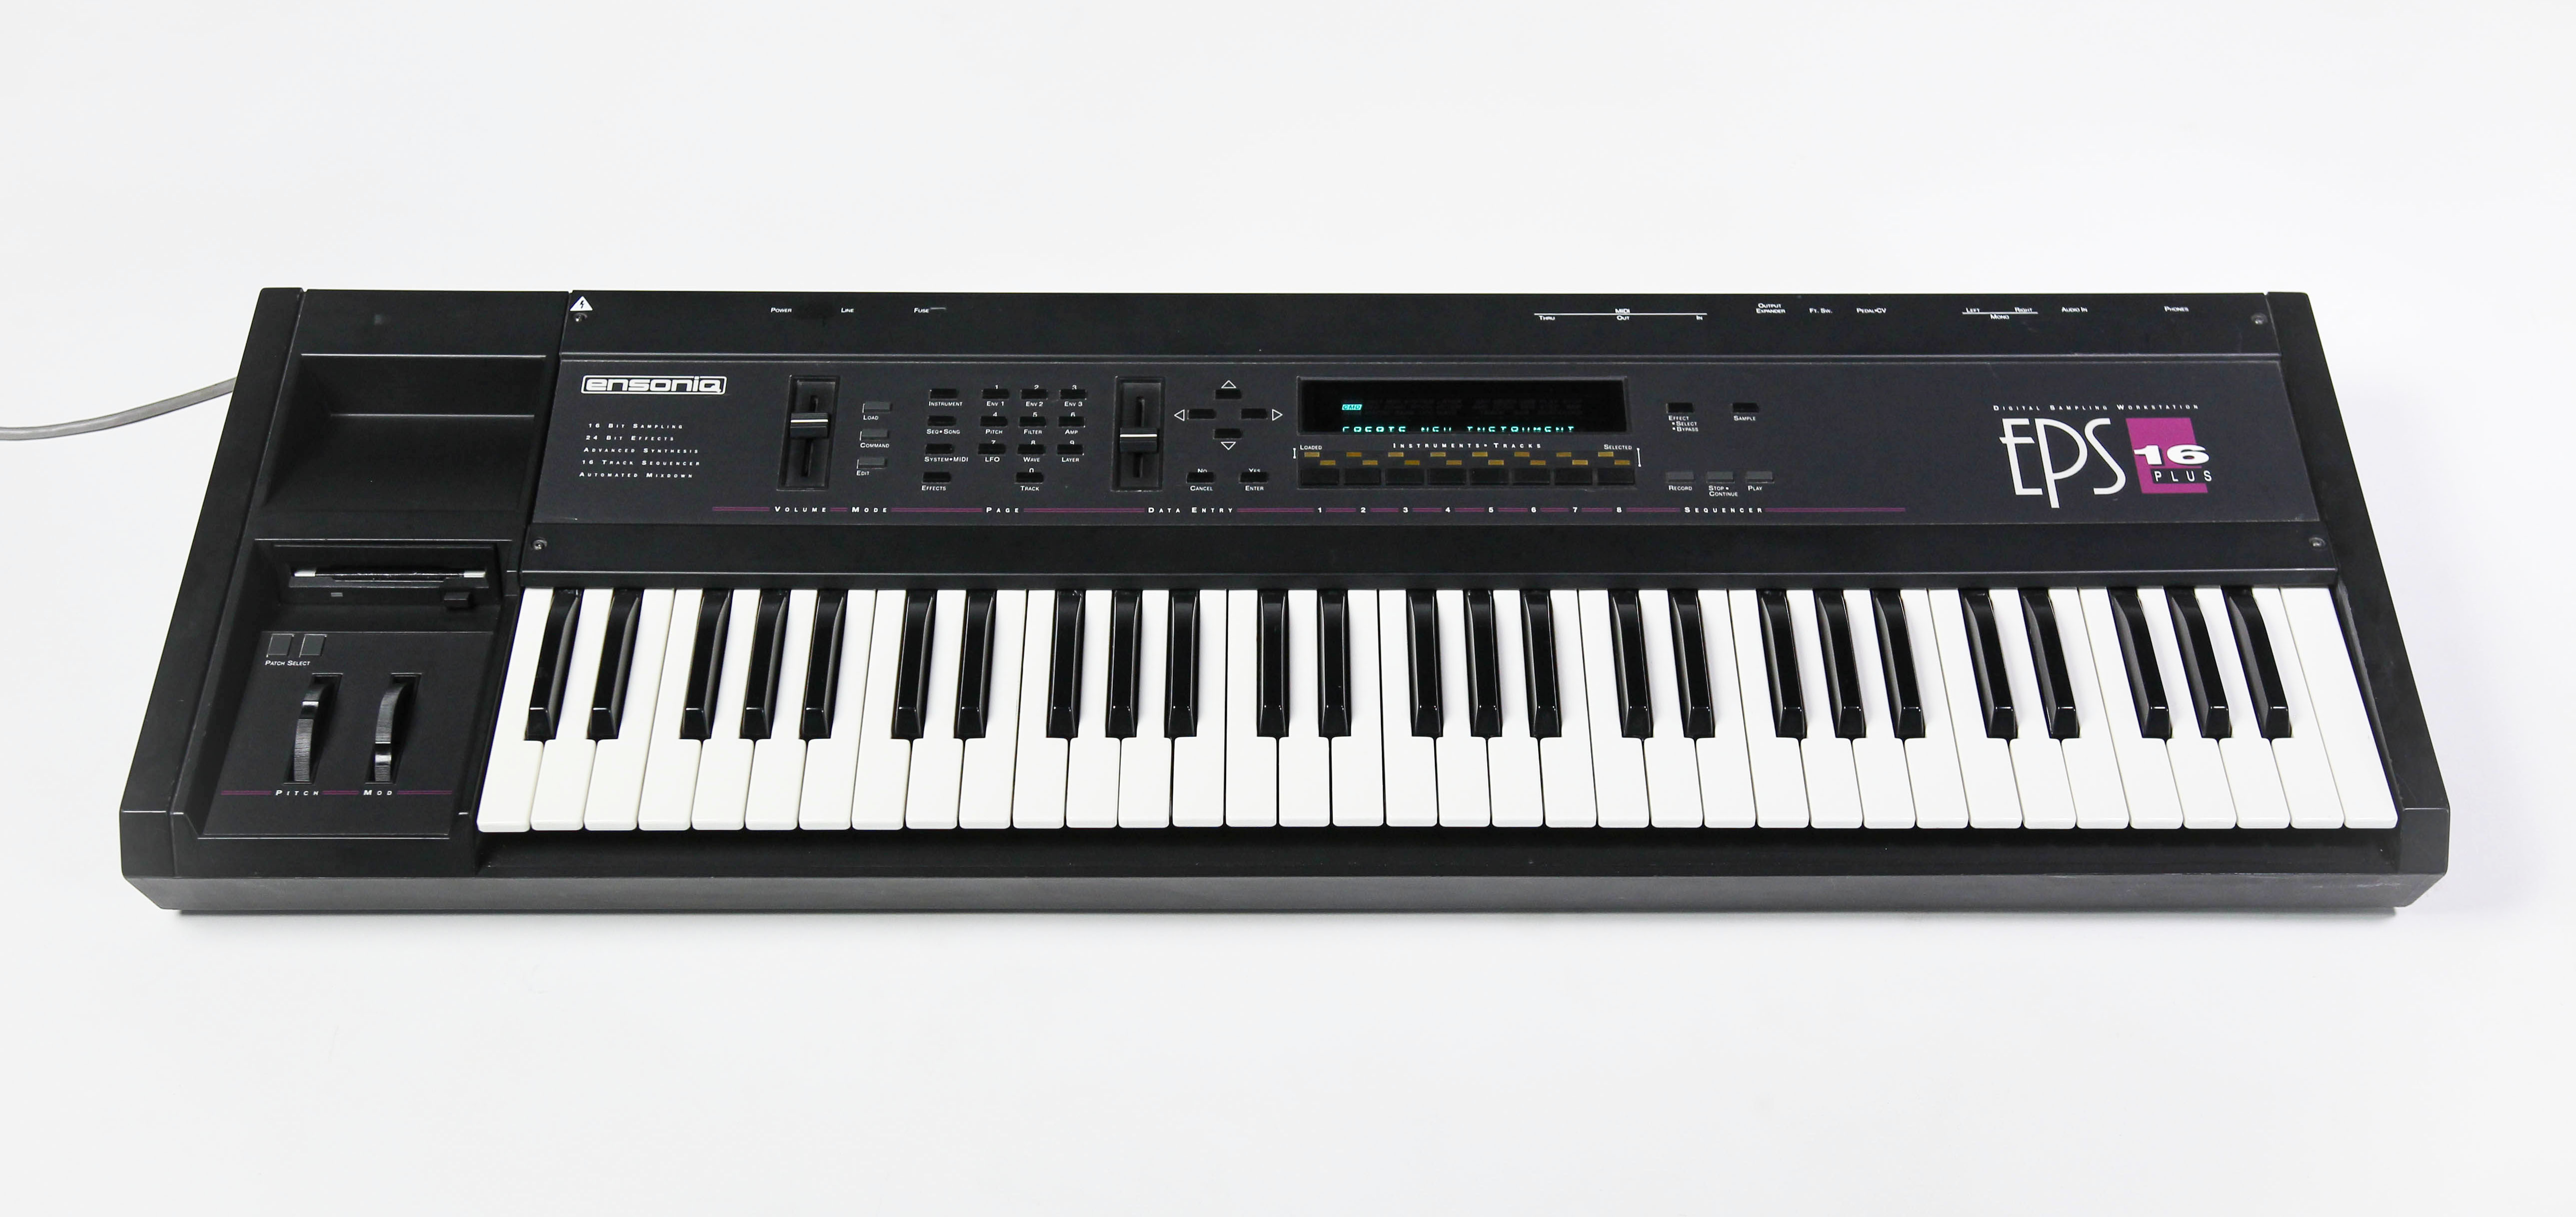 Ensoniq EPS-16 Plus keyboard